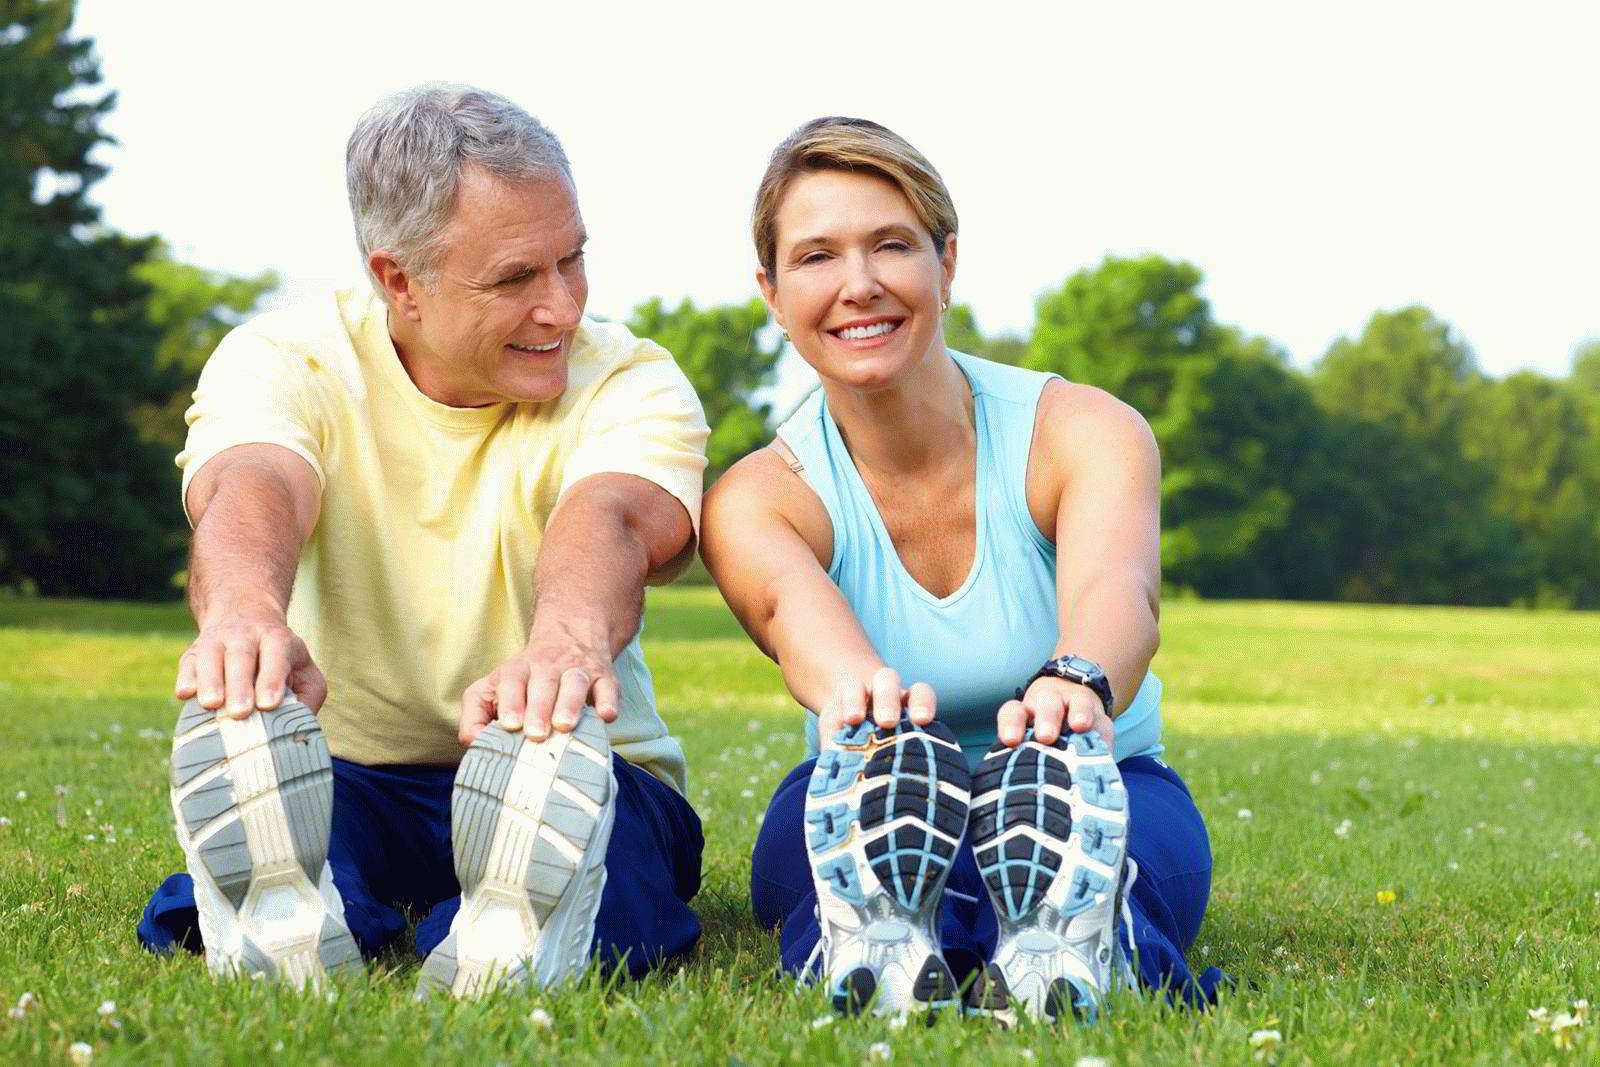 Kādus sporta veidus jūs varat nodarboties ar veselību 40-45 minūtēs?